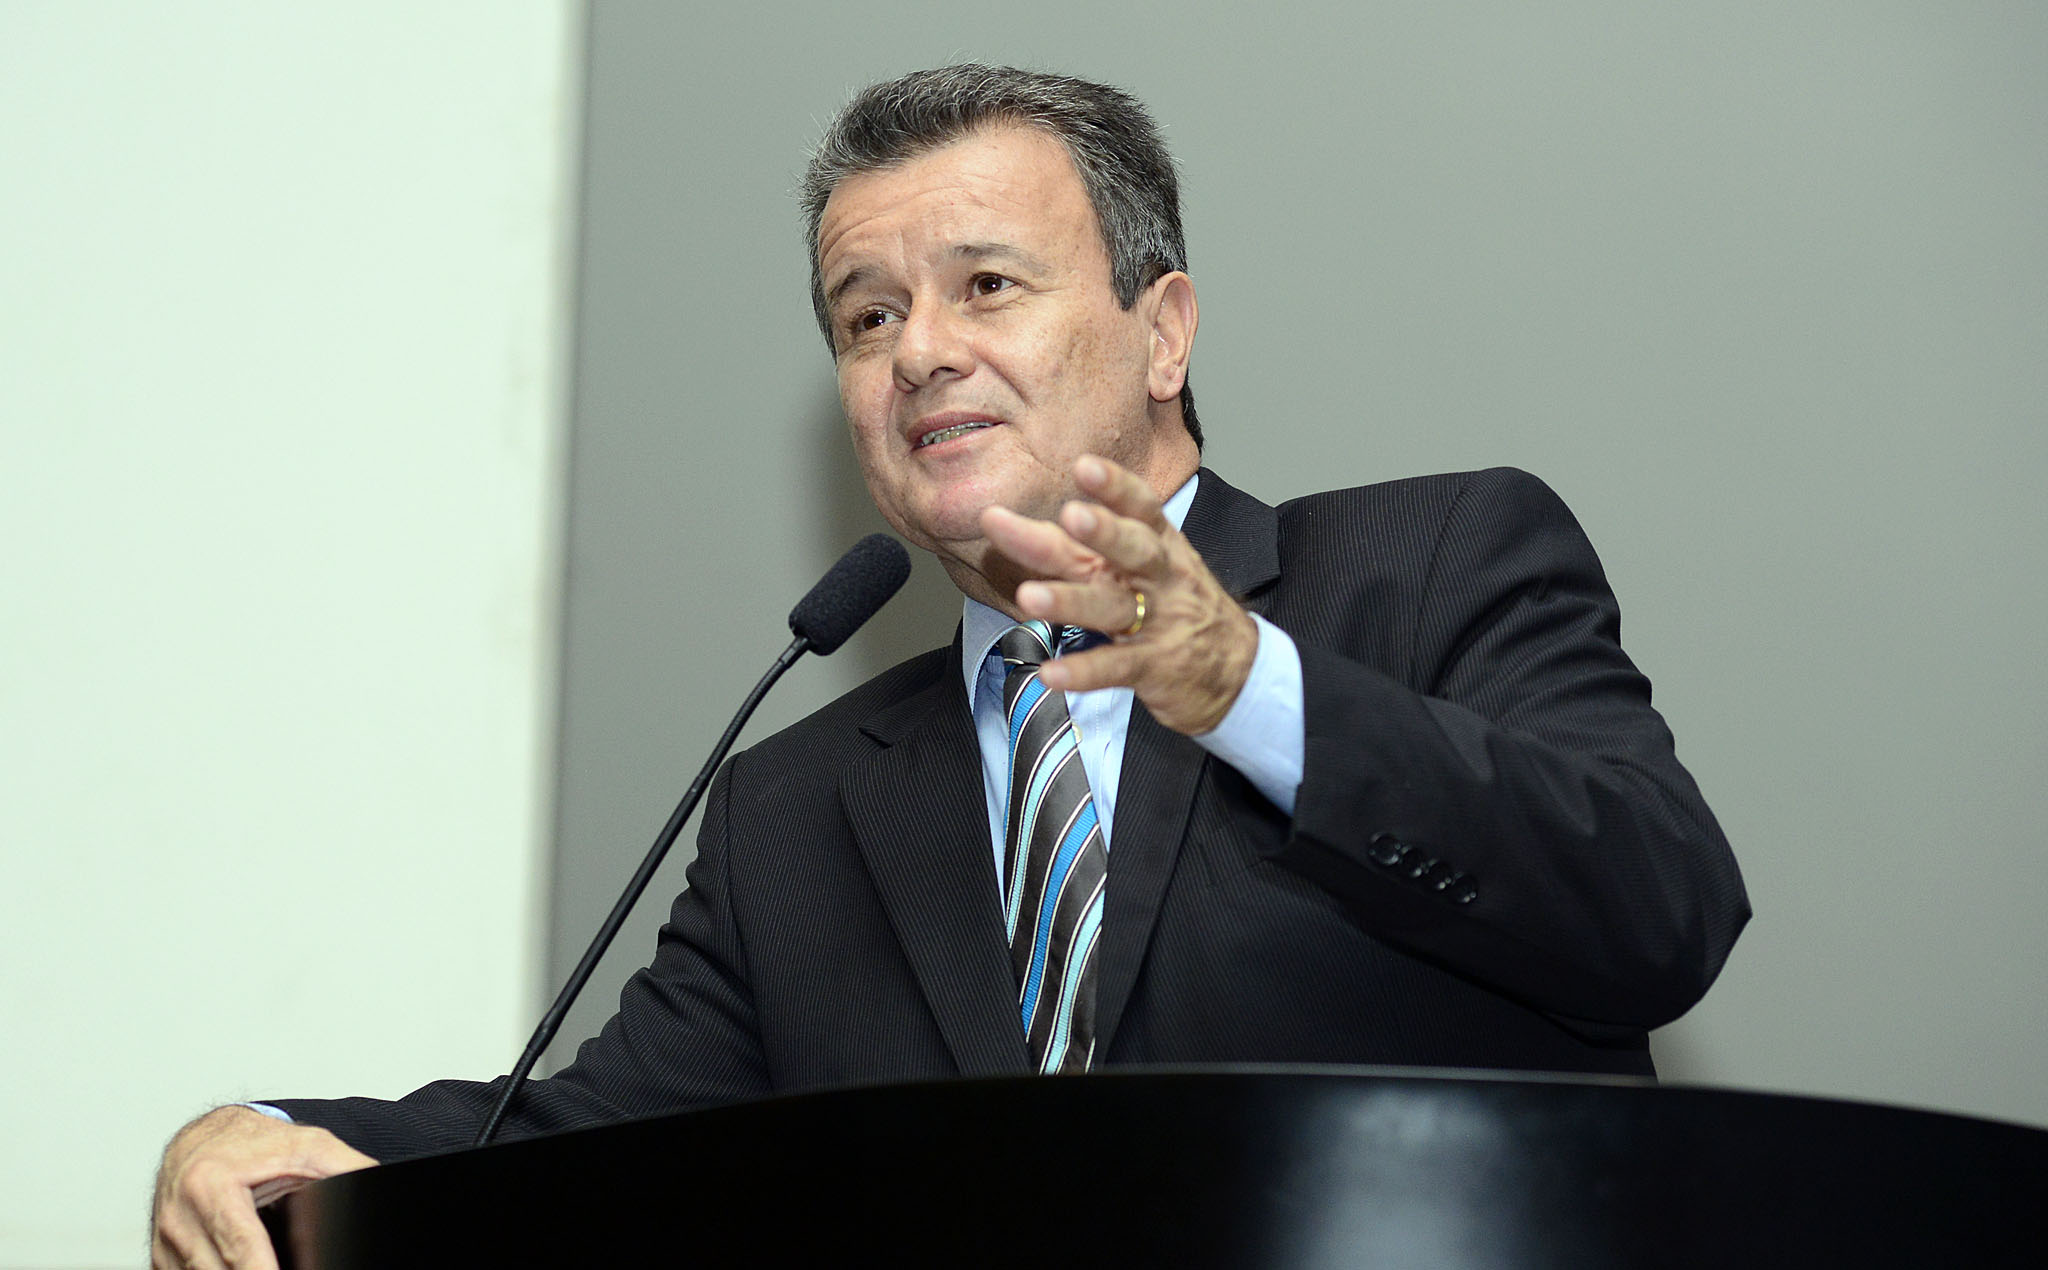 a man giving a speech at a podium